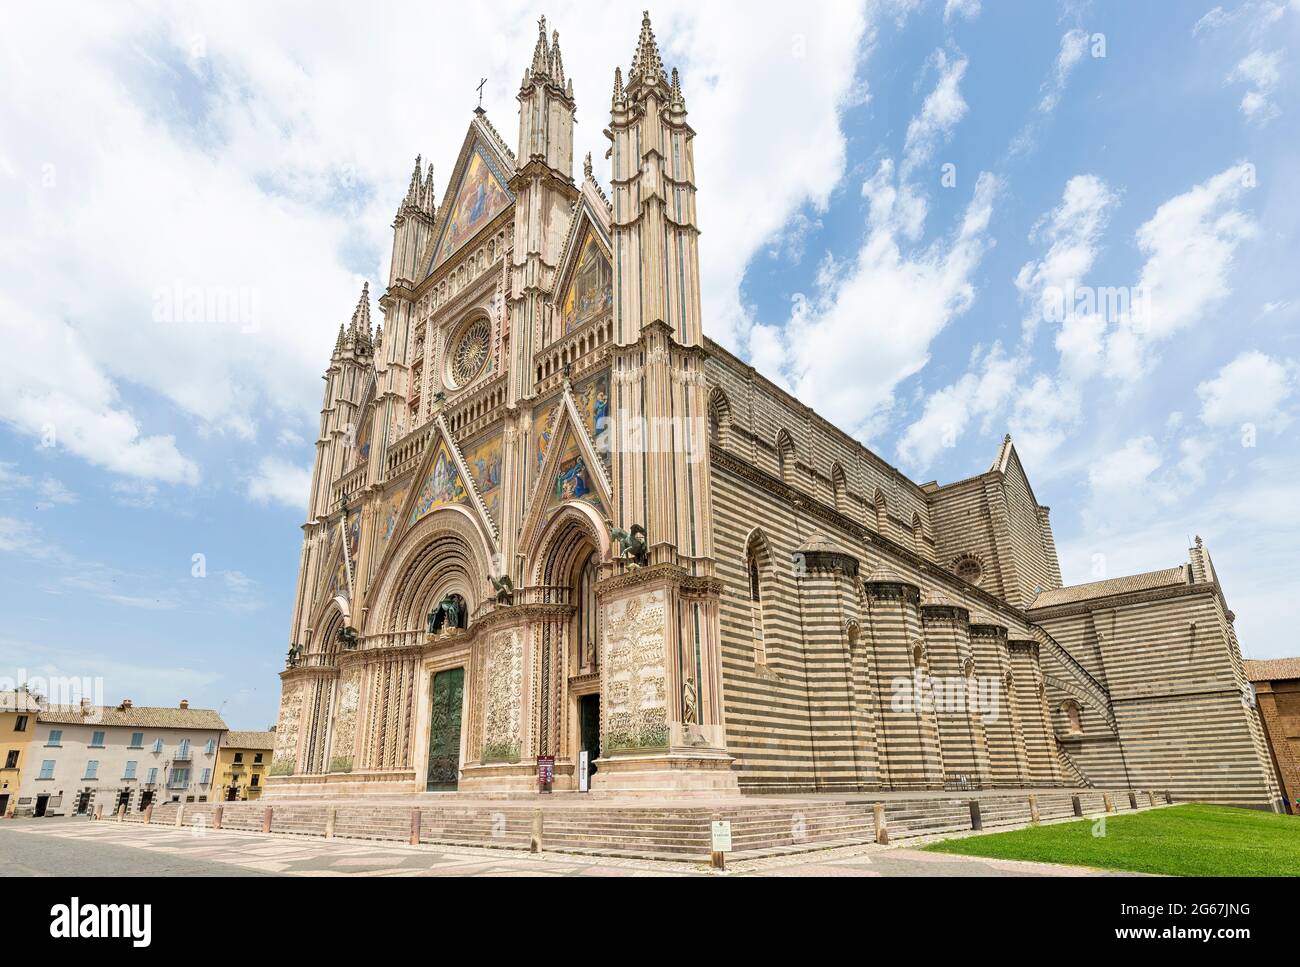 Vue extérieure de la cathédrale de Santa Maria Assunta, située dans la ville d'Orvieto dans la province de Terni - Italie Banque D'Images